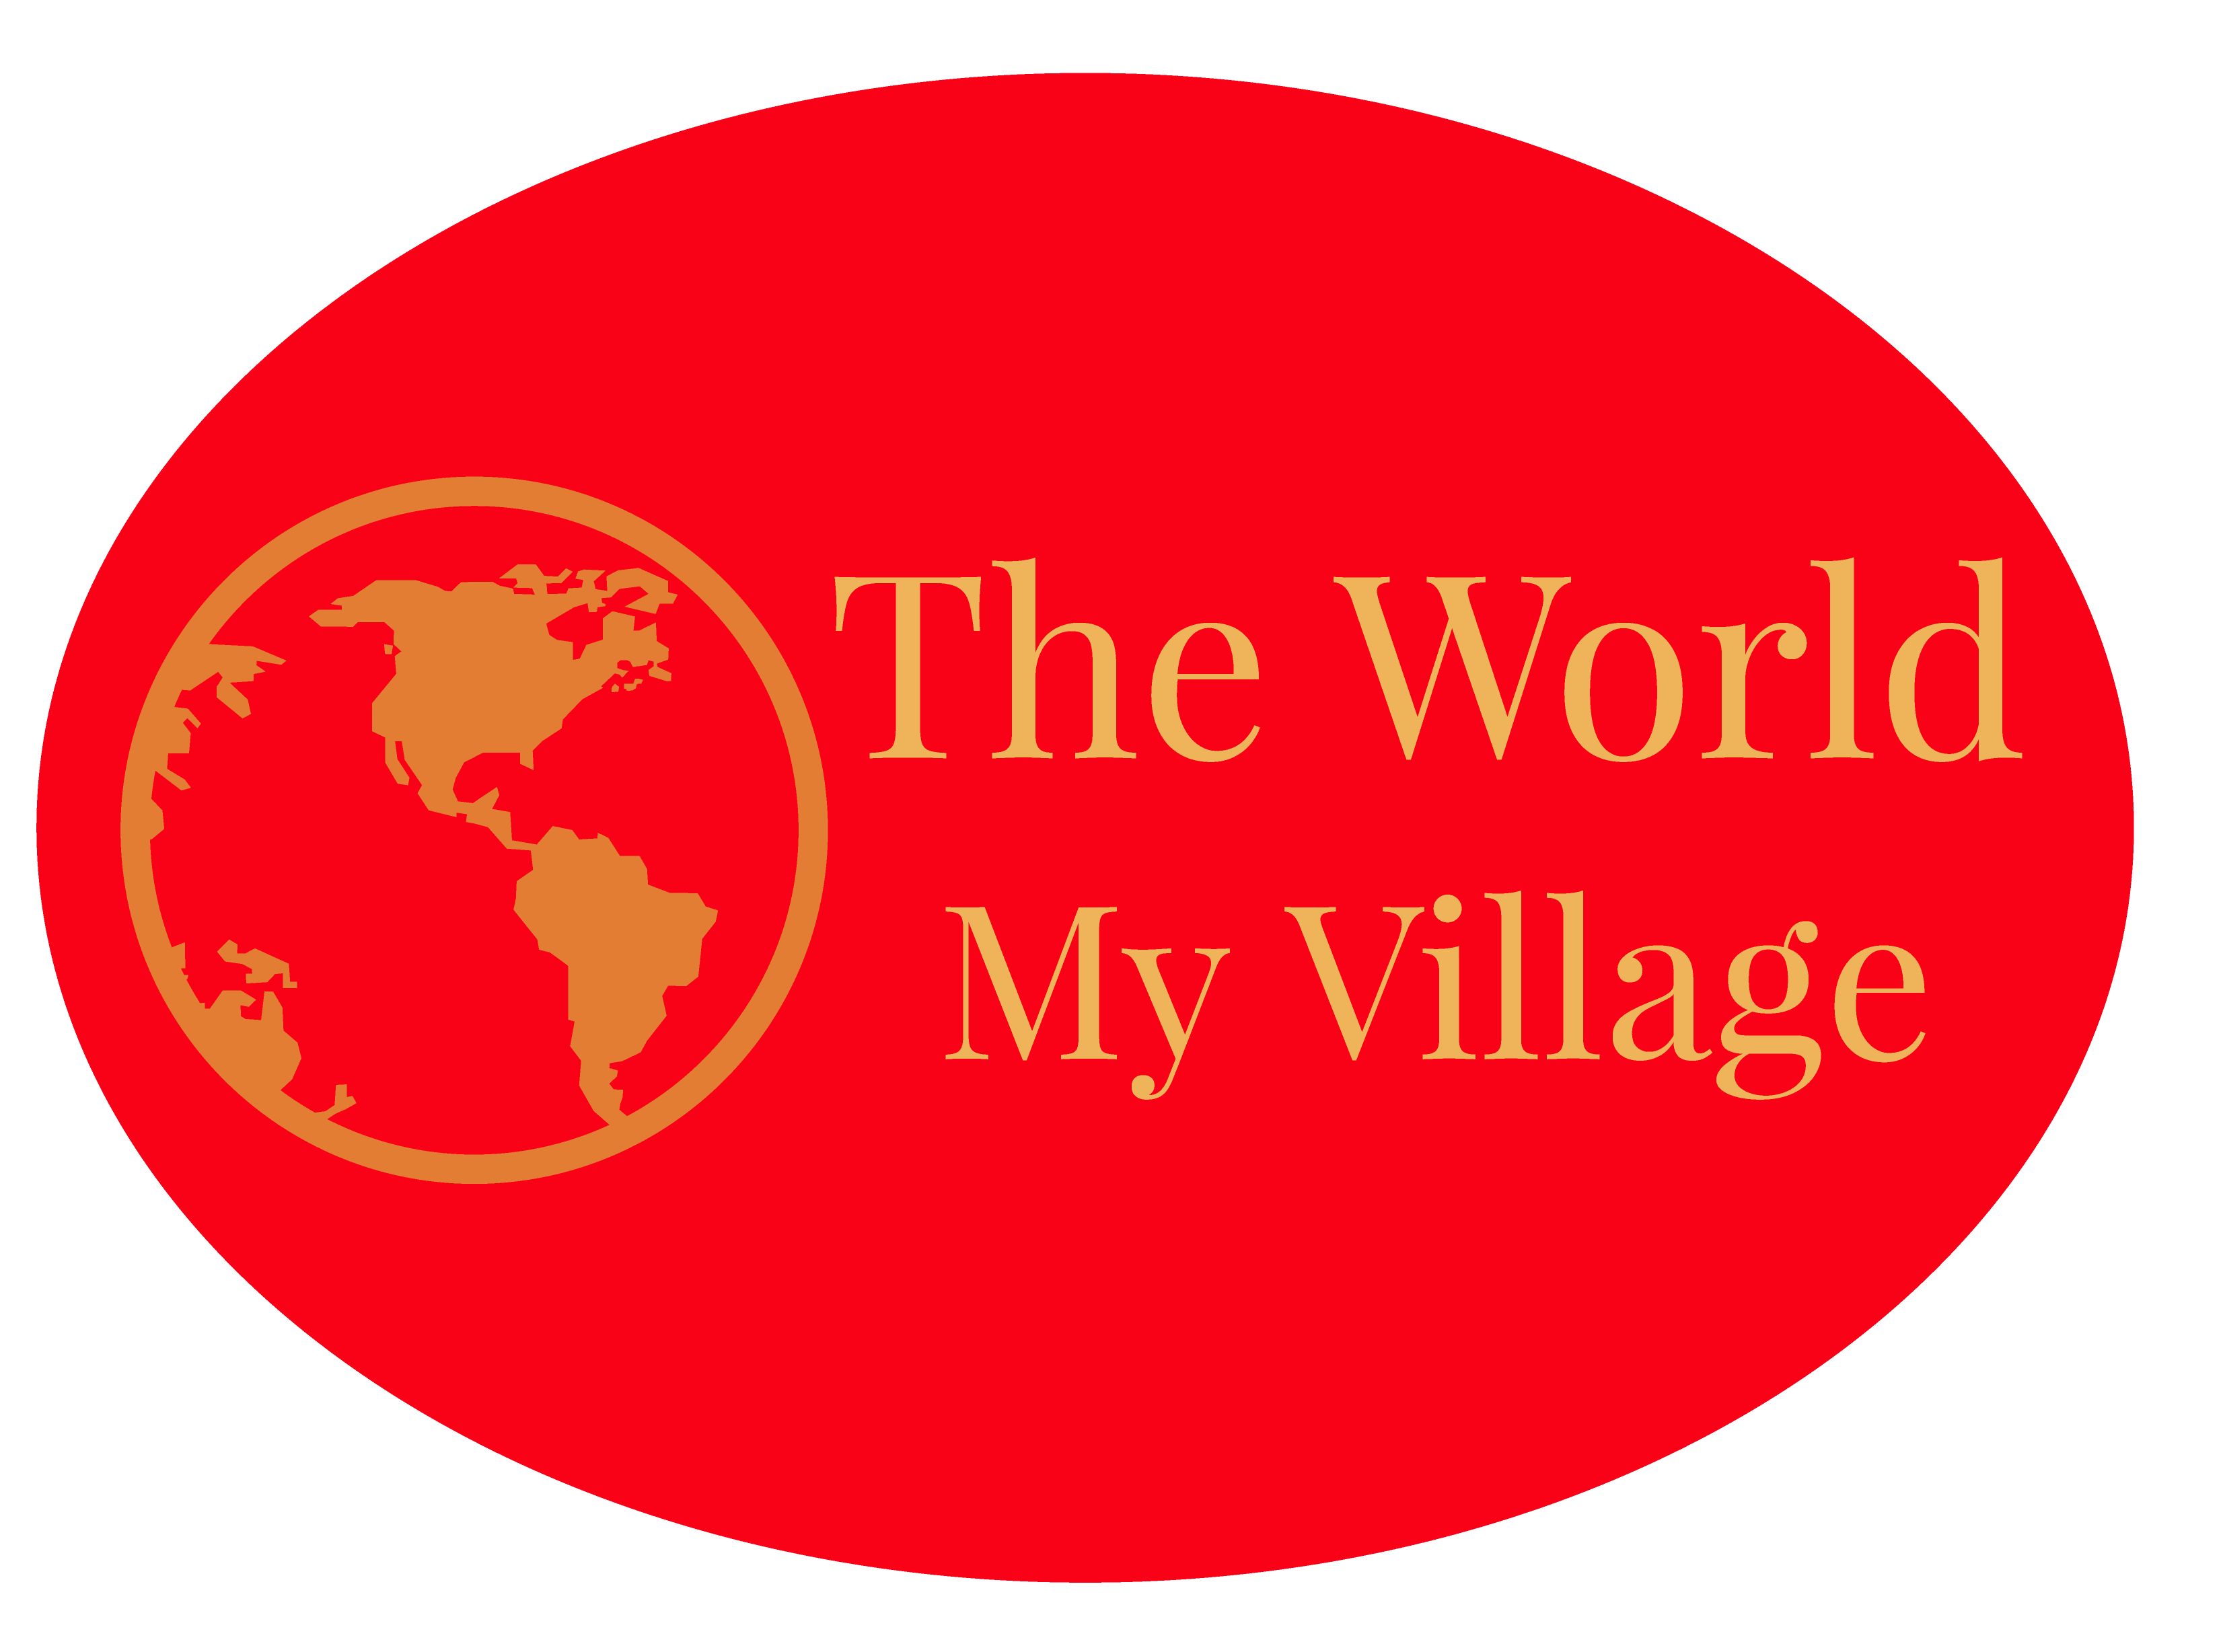 The World My Village